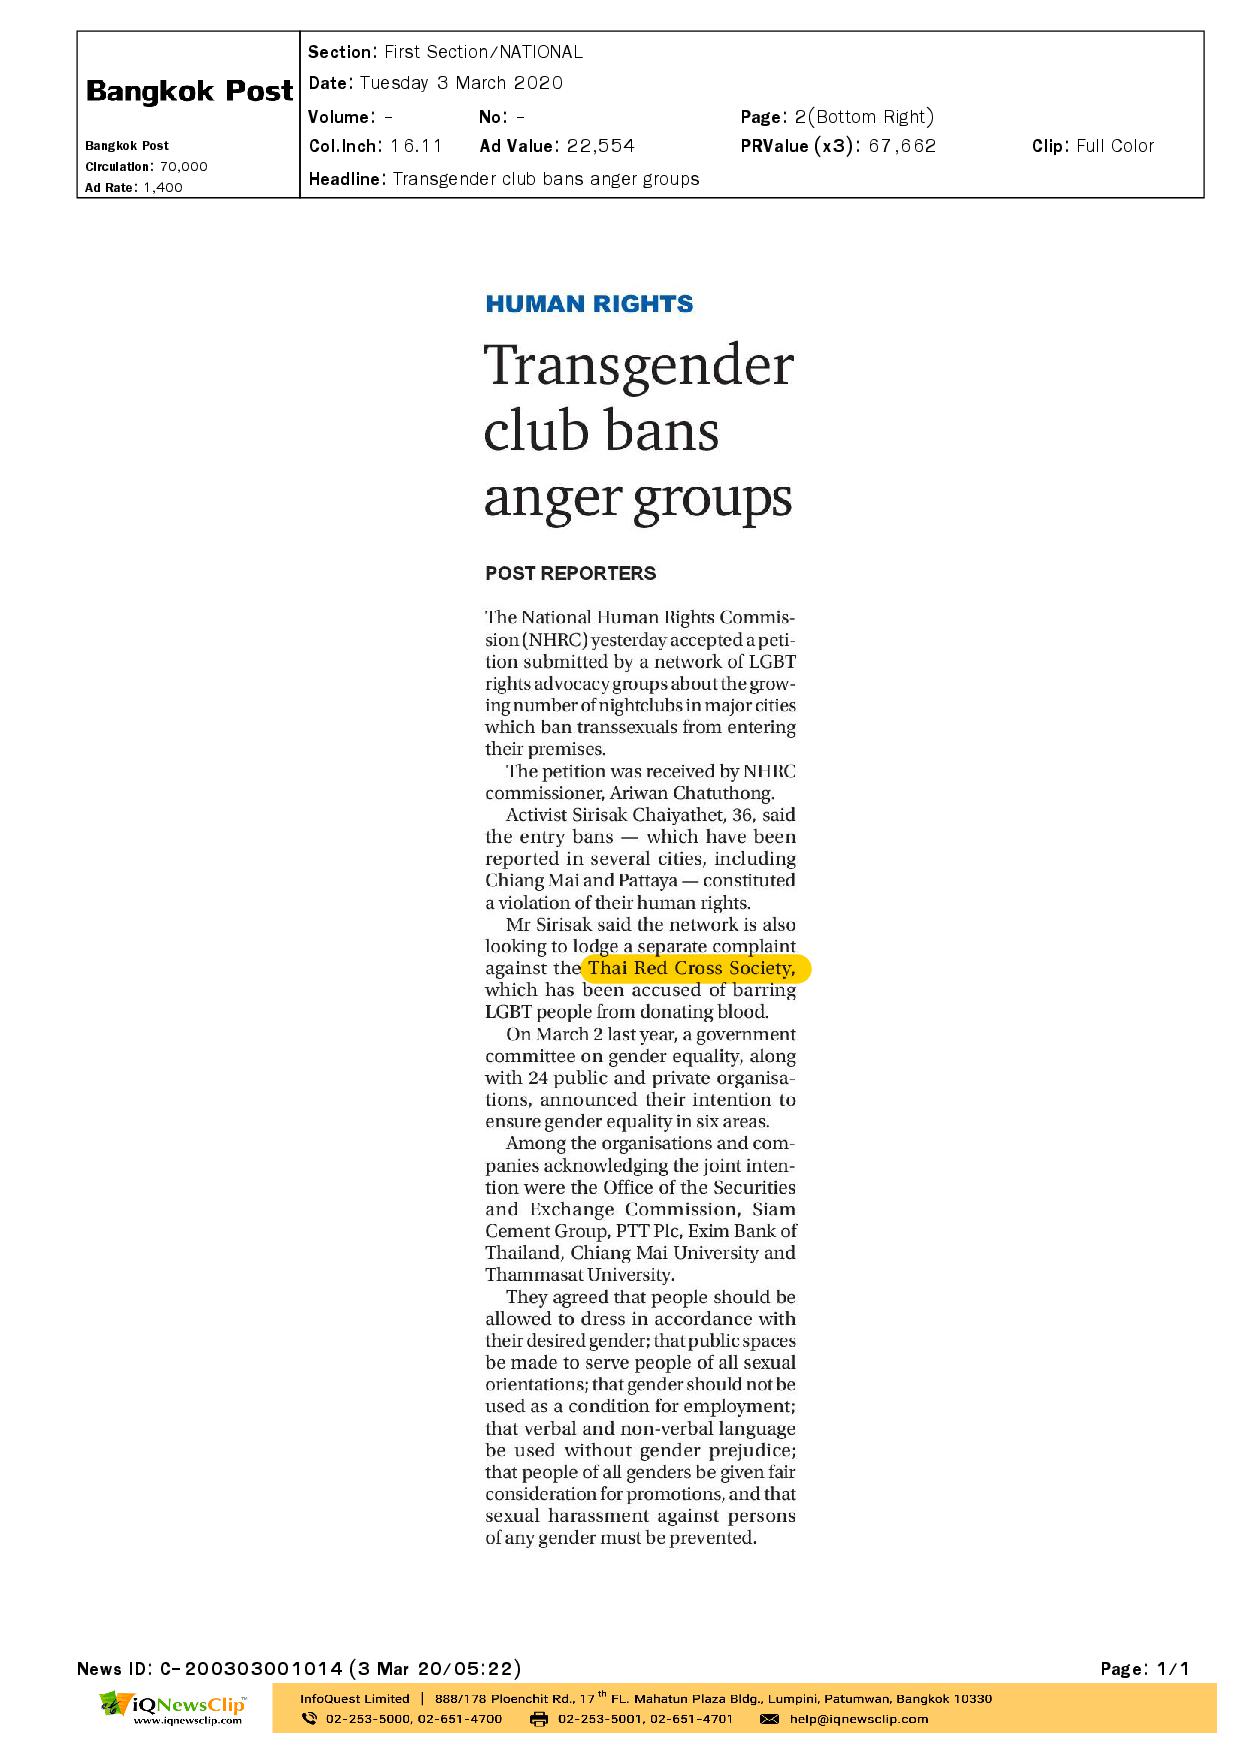 Transgender club bans anger groups